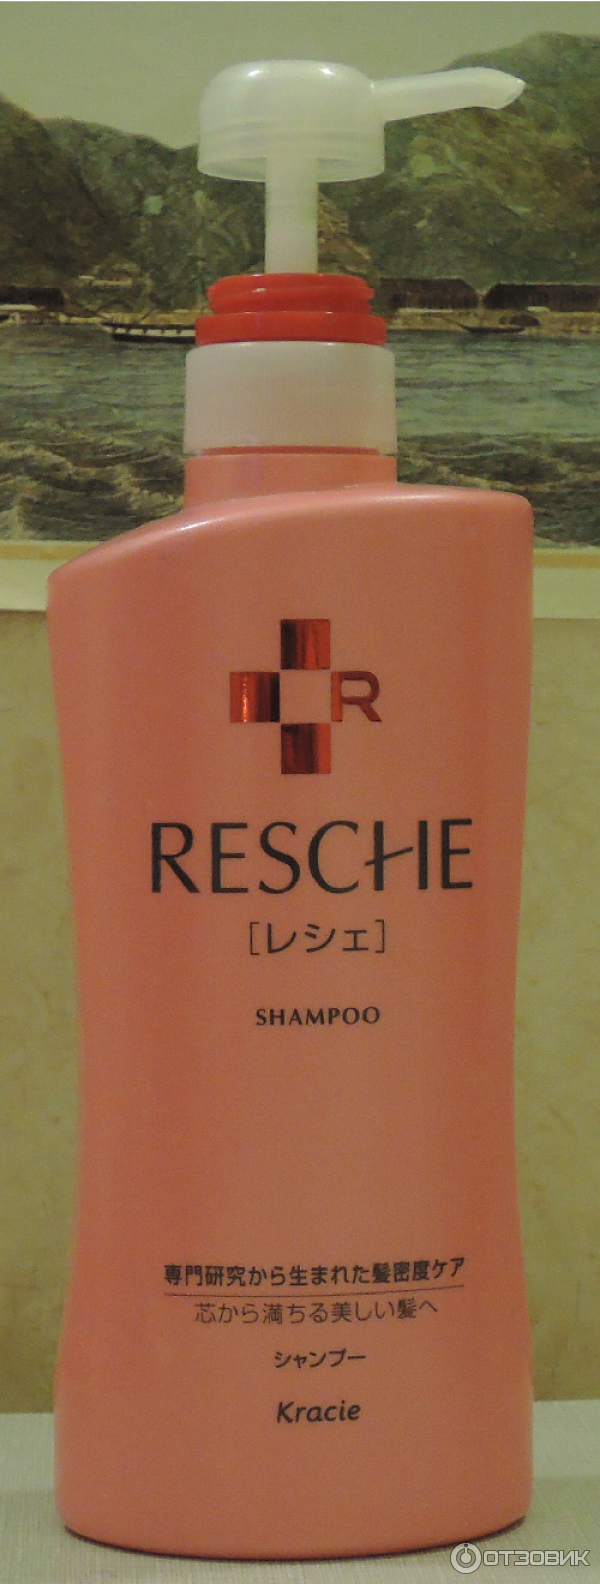 Resche шампунь для поврежденных окрашиванием и химической завивкой волос